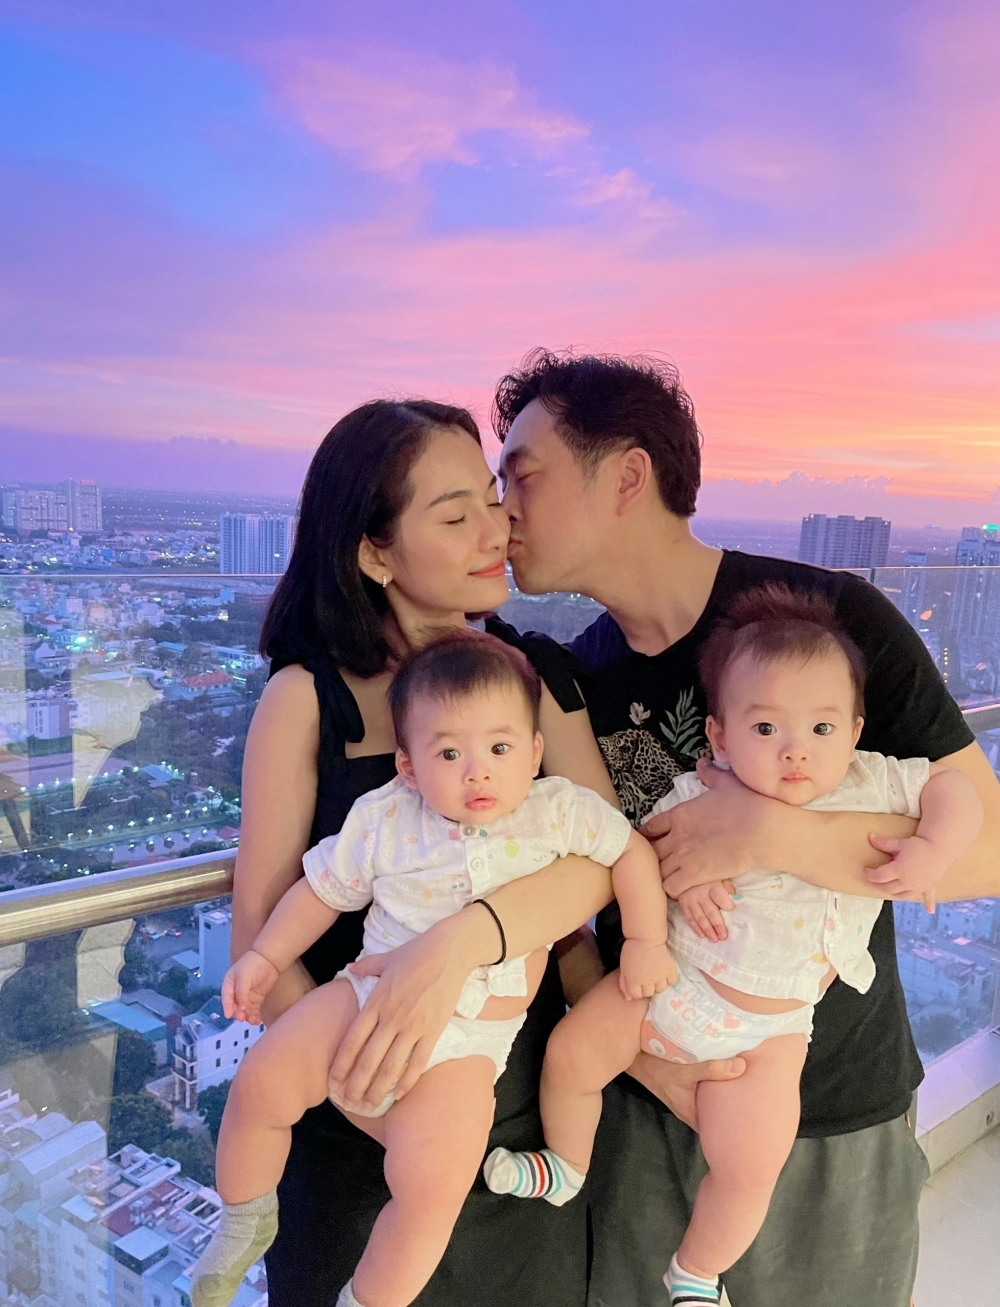 Cuối năm vừa qua Sara Lưu và nhạc sĩ Dương Khắc Linh chính thức chào đón hai quý tử sinh đôi là bé Gia Khang và Gia Khôi